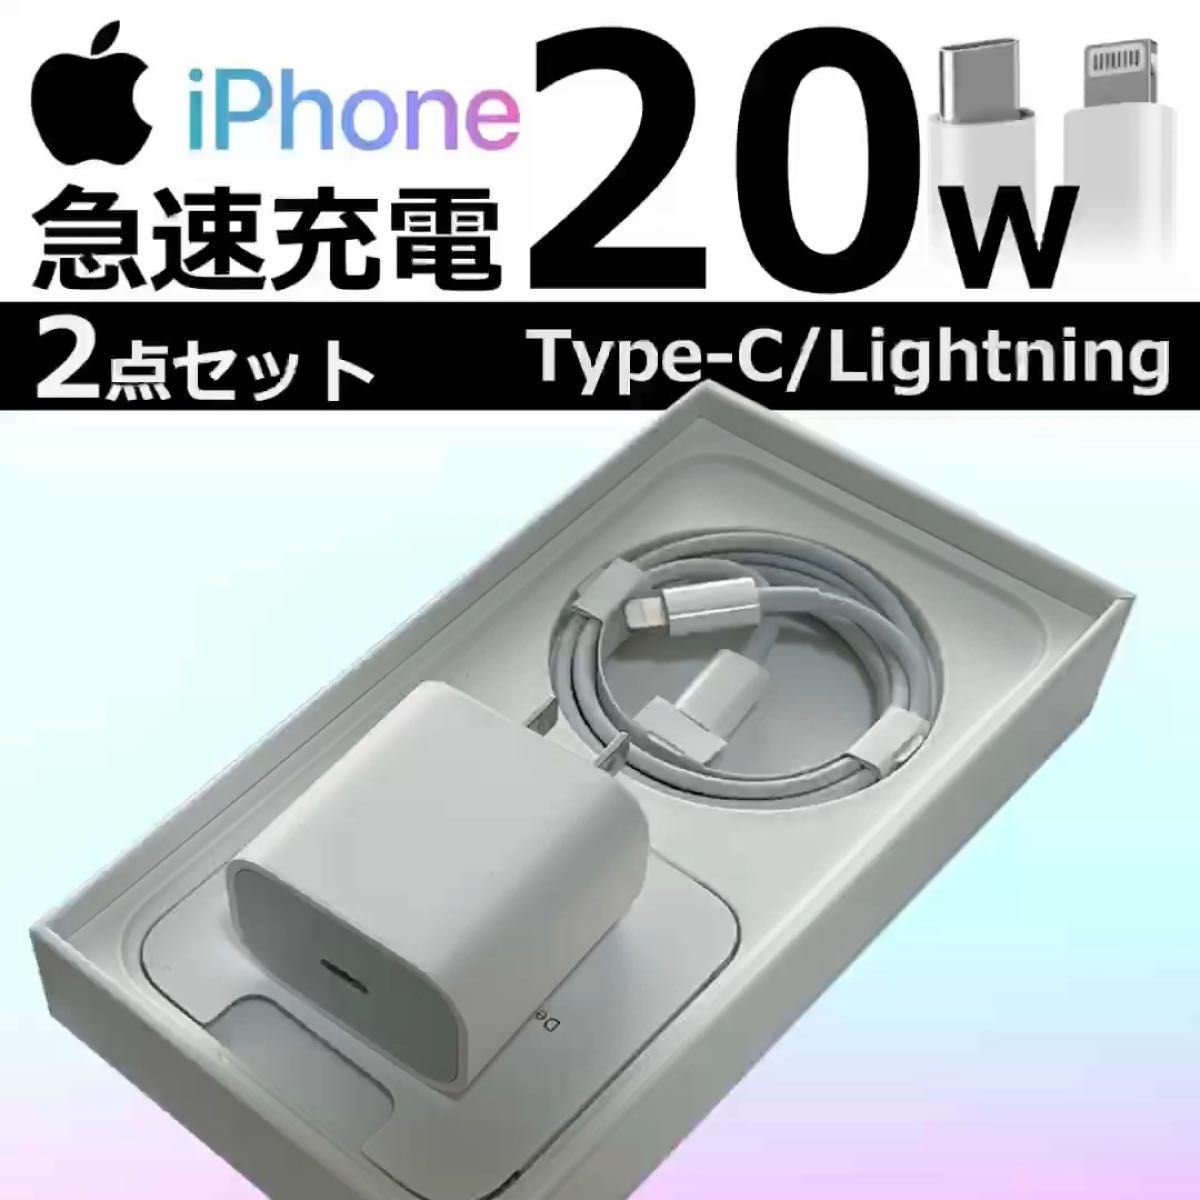 iPhone Type-C 20W ライトニングケーブル 急速 高速充電ケーブル 充電器 コード lightning cable 